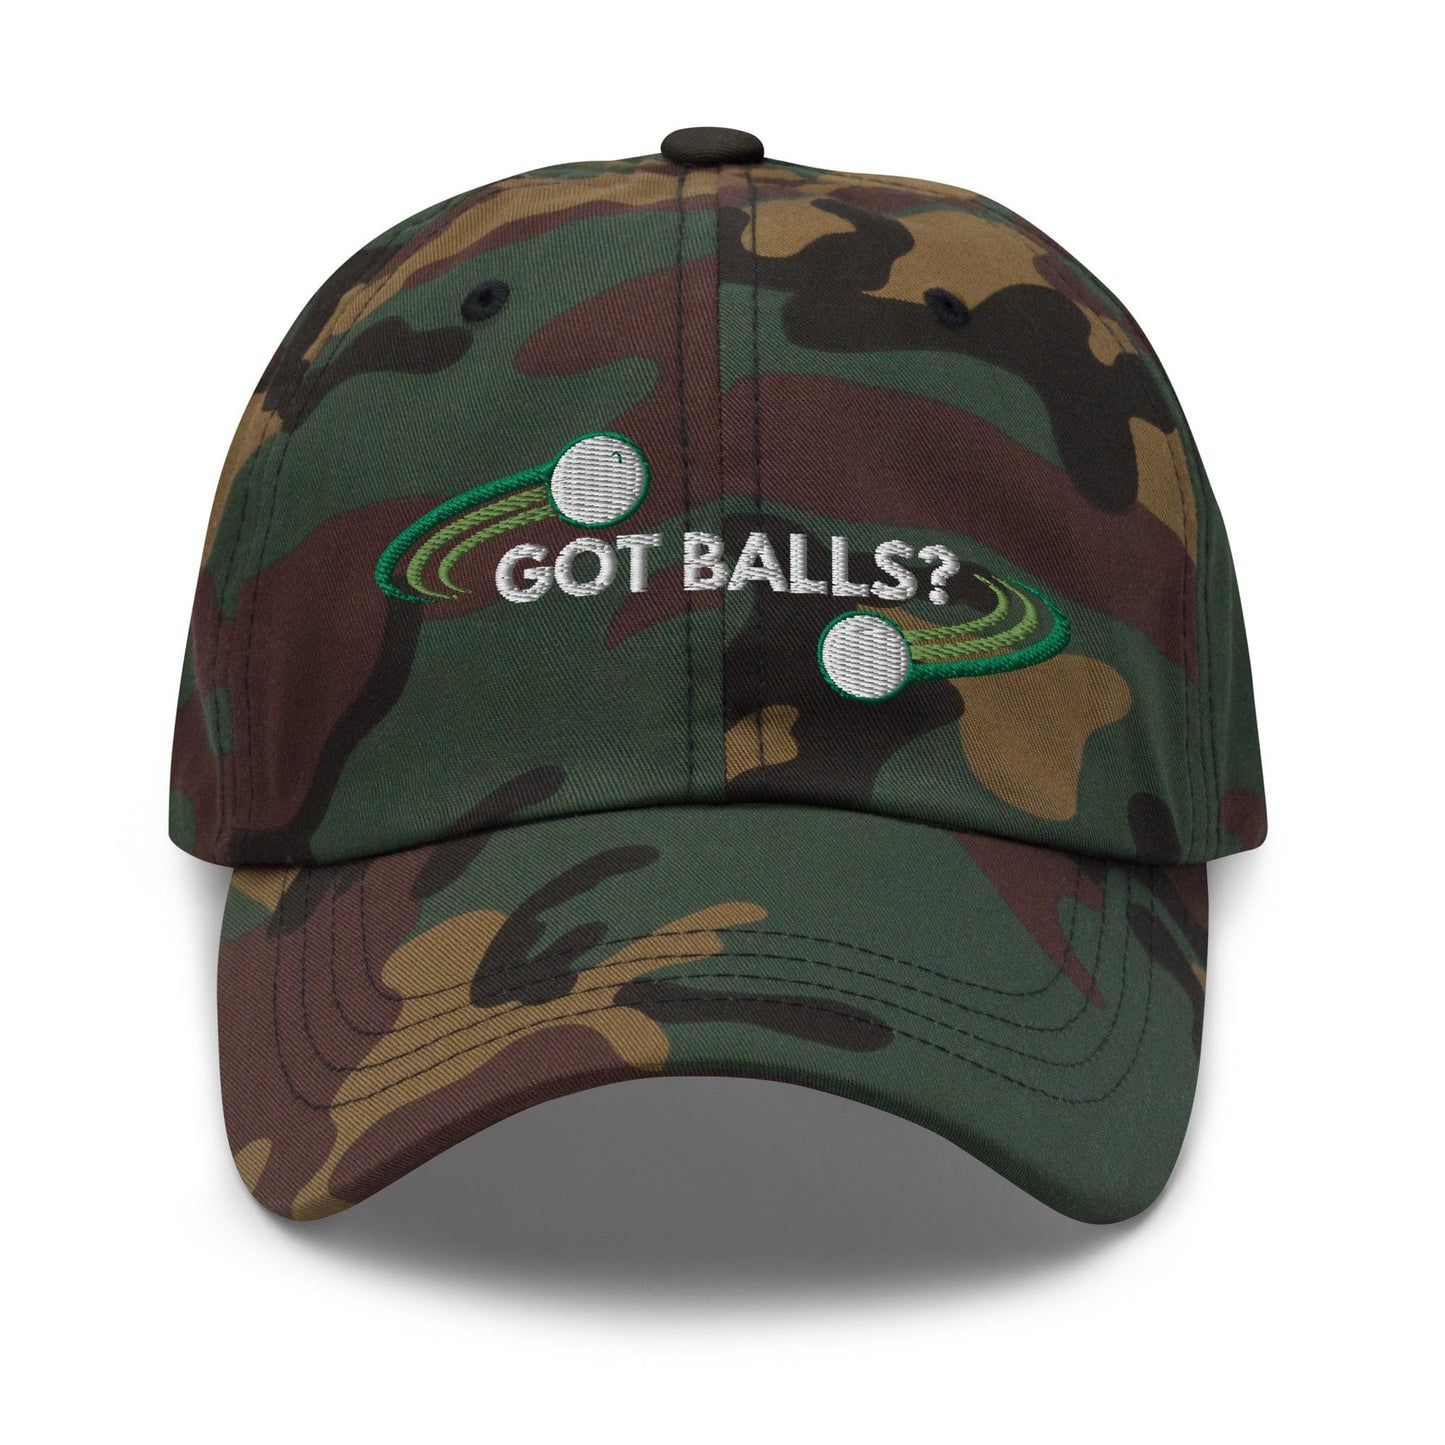 Funny Golfer Gifts  Dad Cap Got Balls Cap